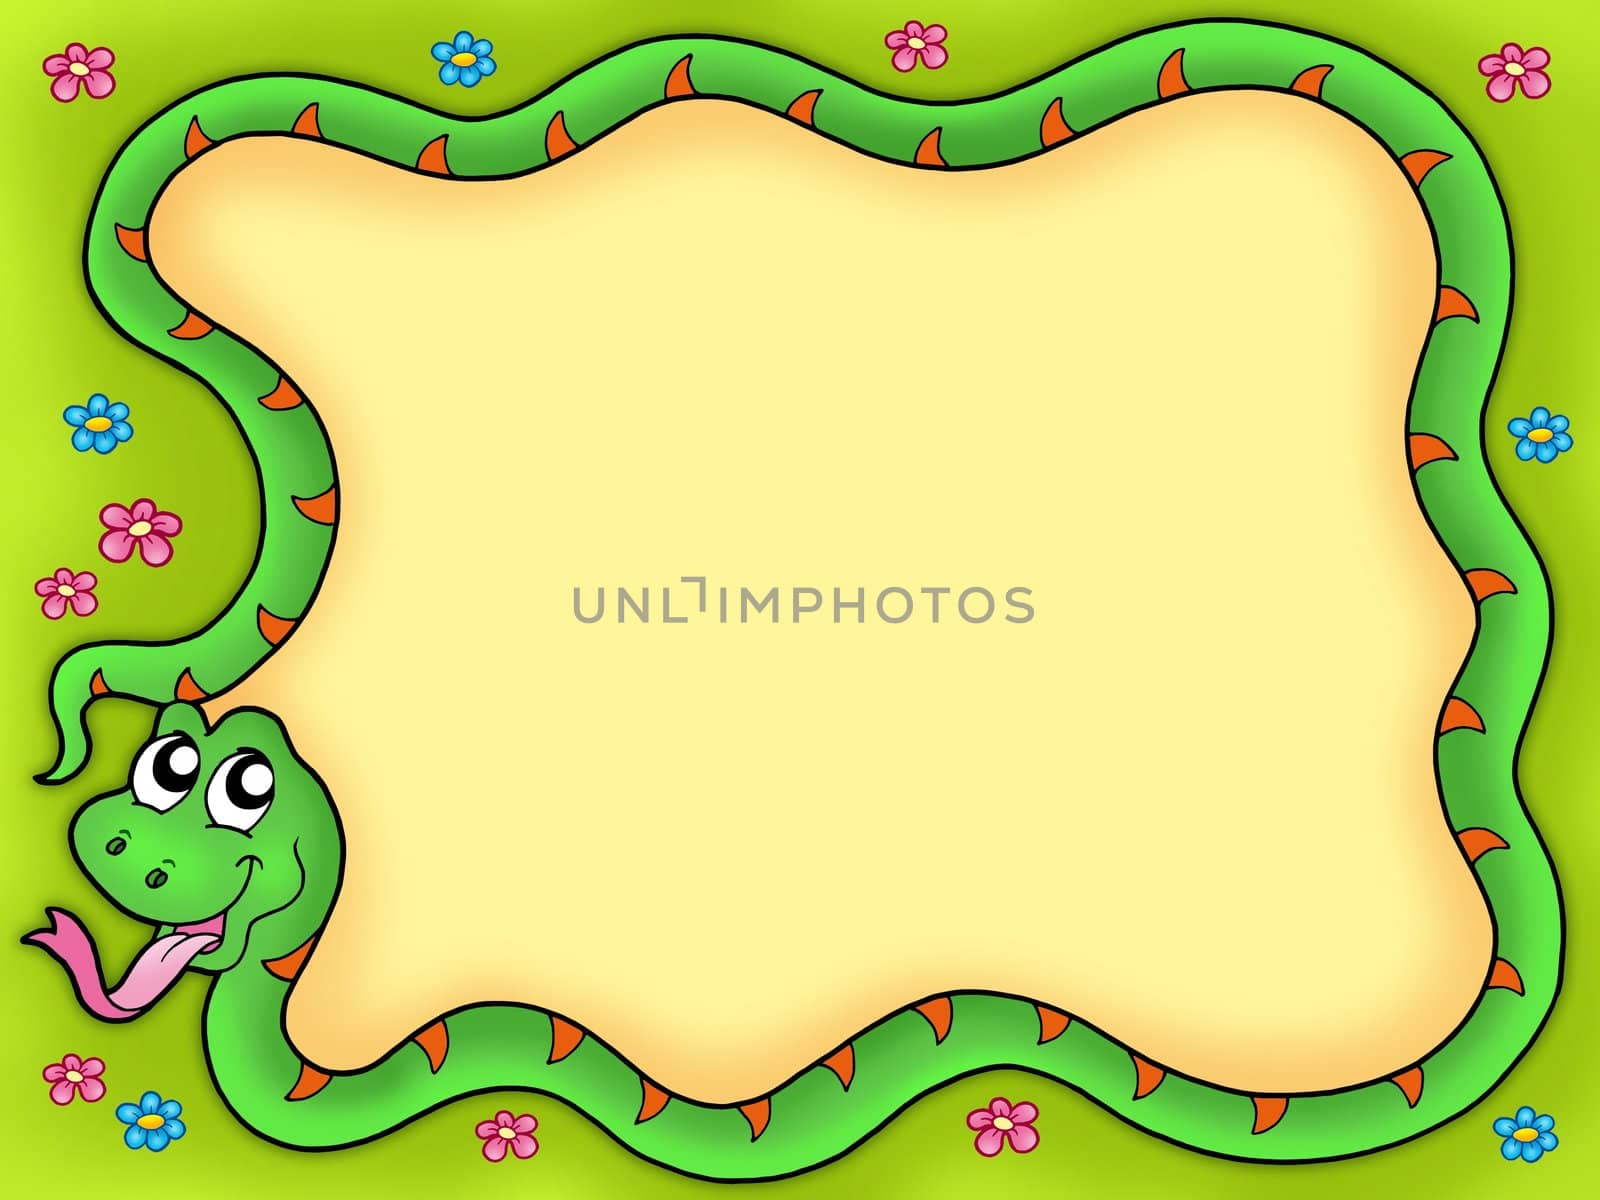 Snake frame with flowers 1 - color illustration.